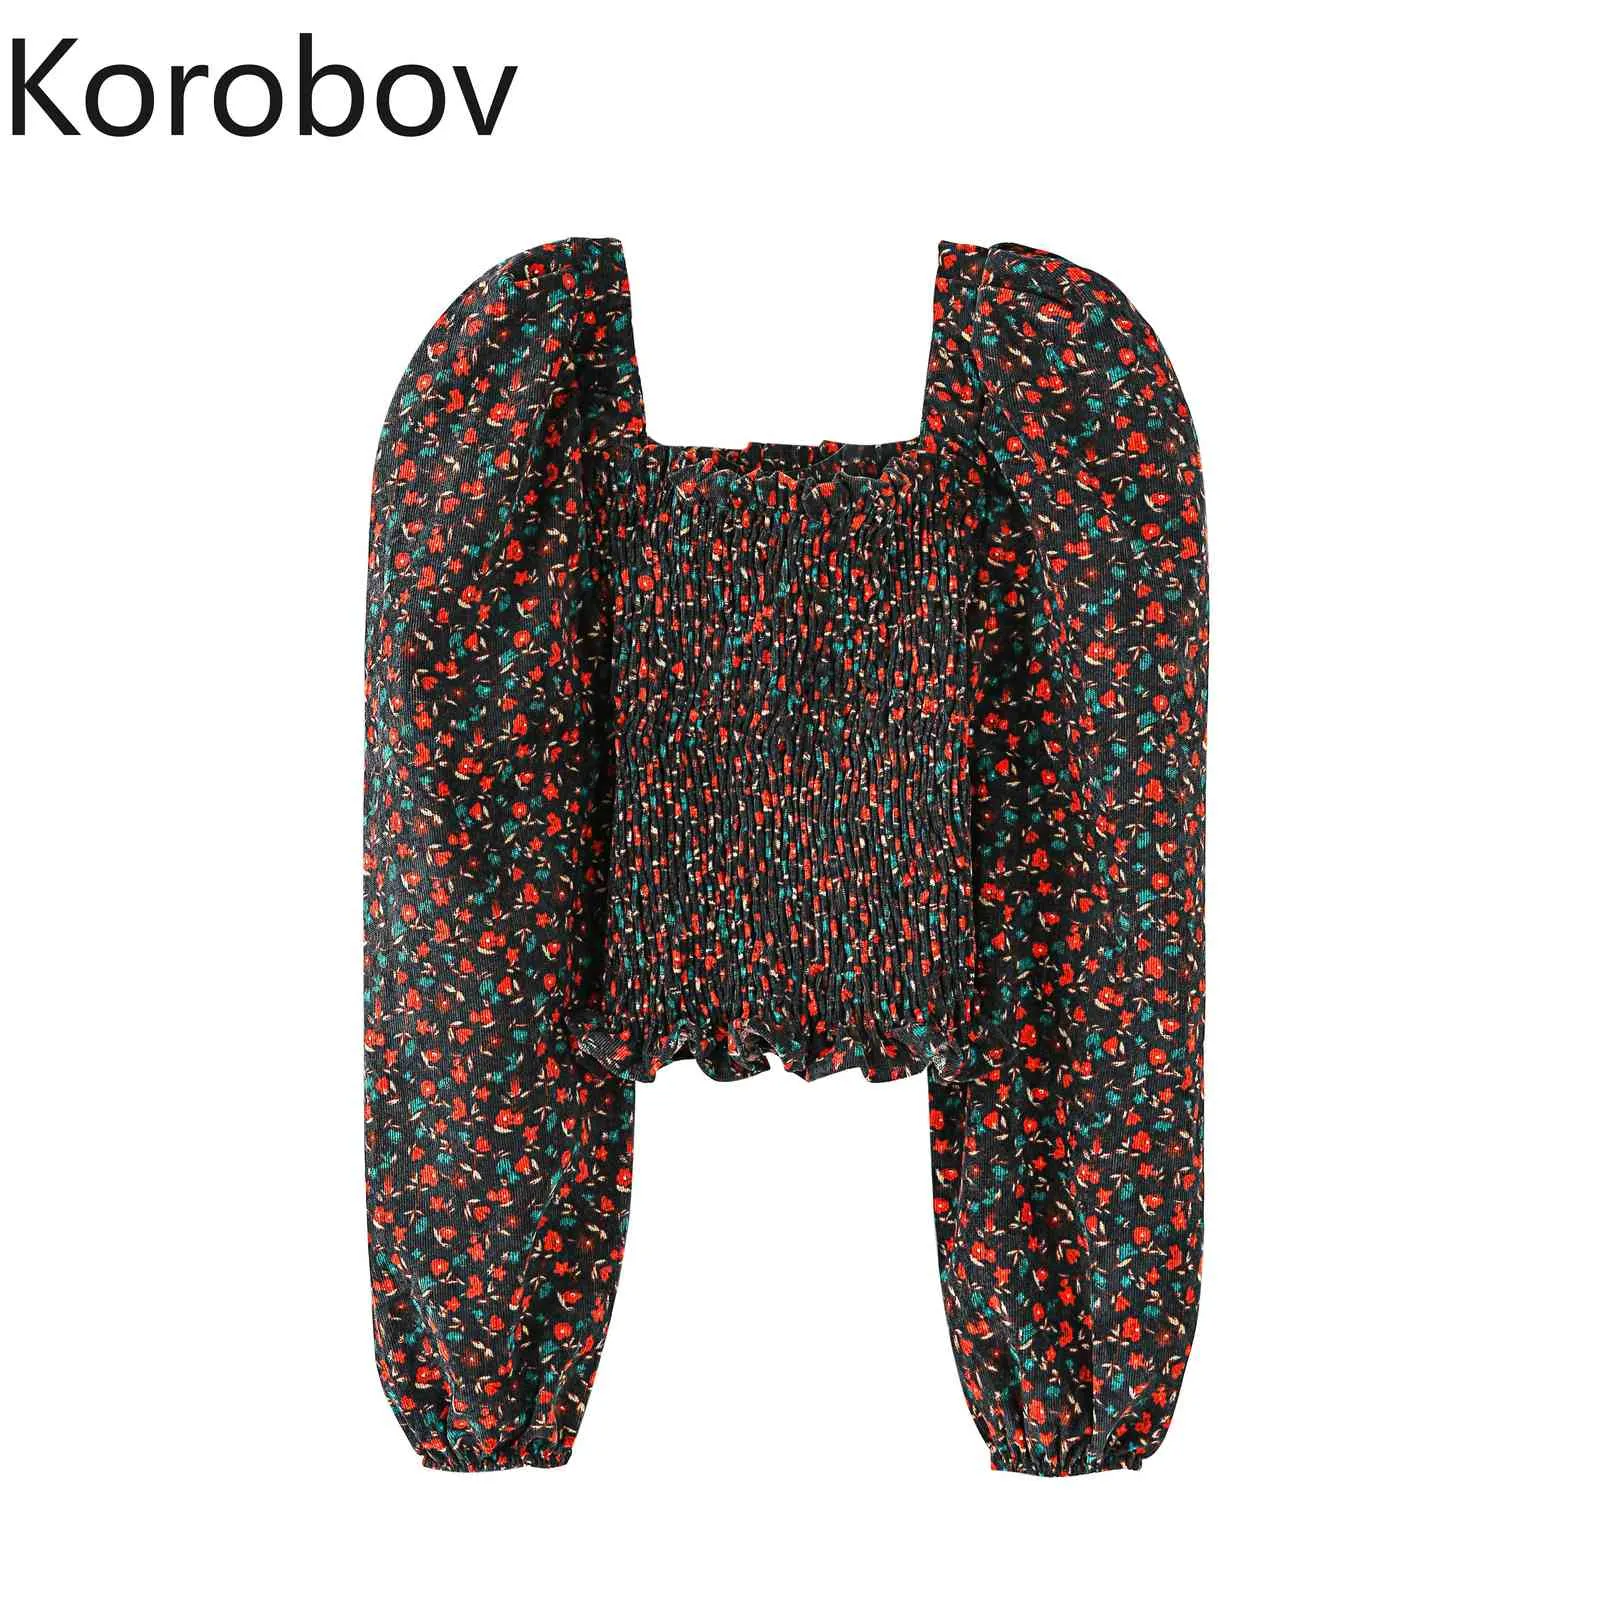 Korobov Kadınlar Kare Yaka Bluzlar İlkbahar Yaz Yeni Varış Kadın Gömlek Kore Tatlı Chic Uzun Kollu Baskı Blusas Mujer 210430